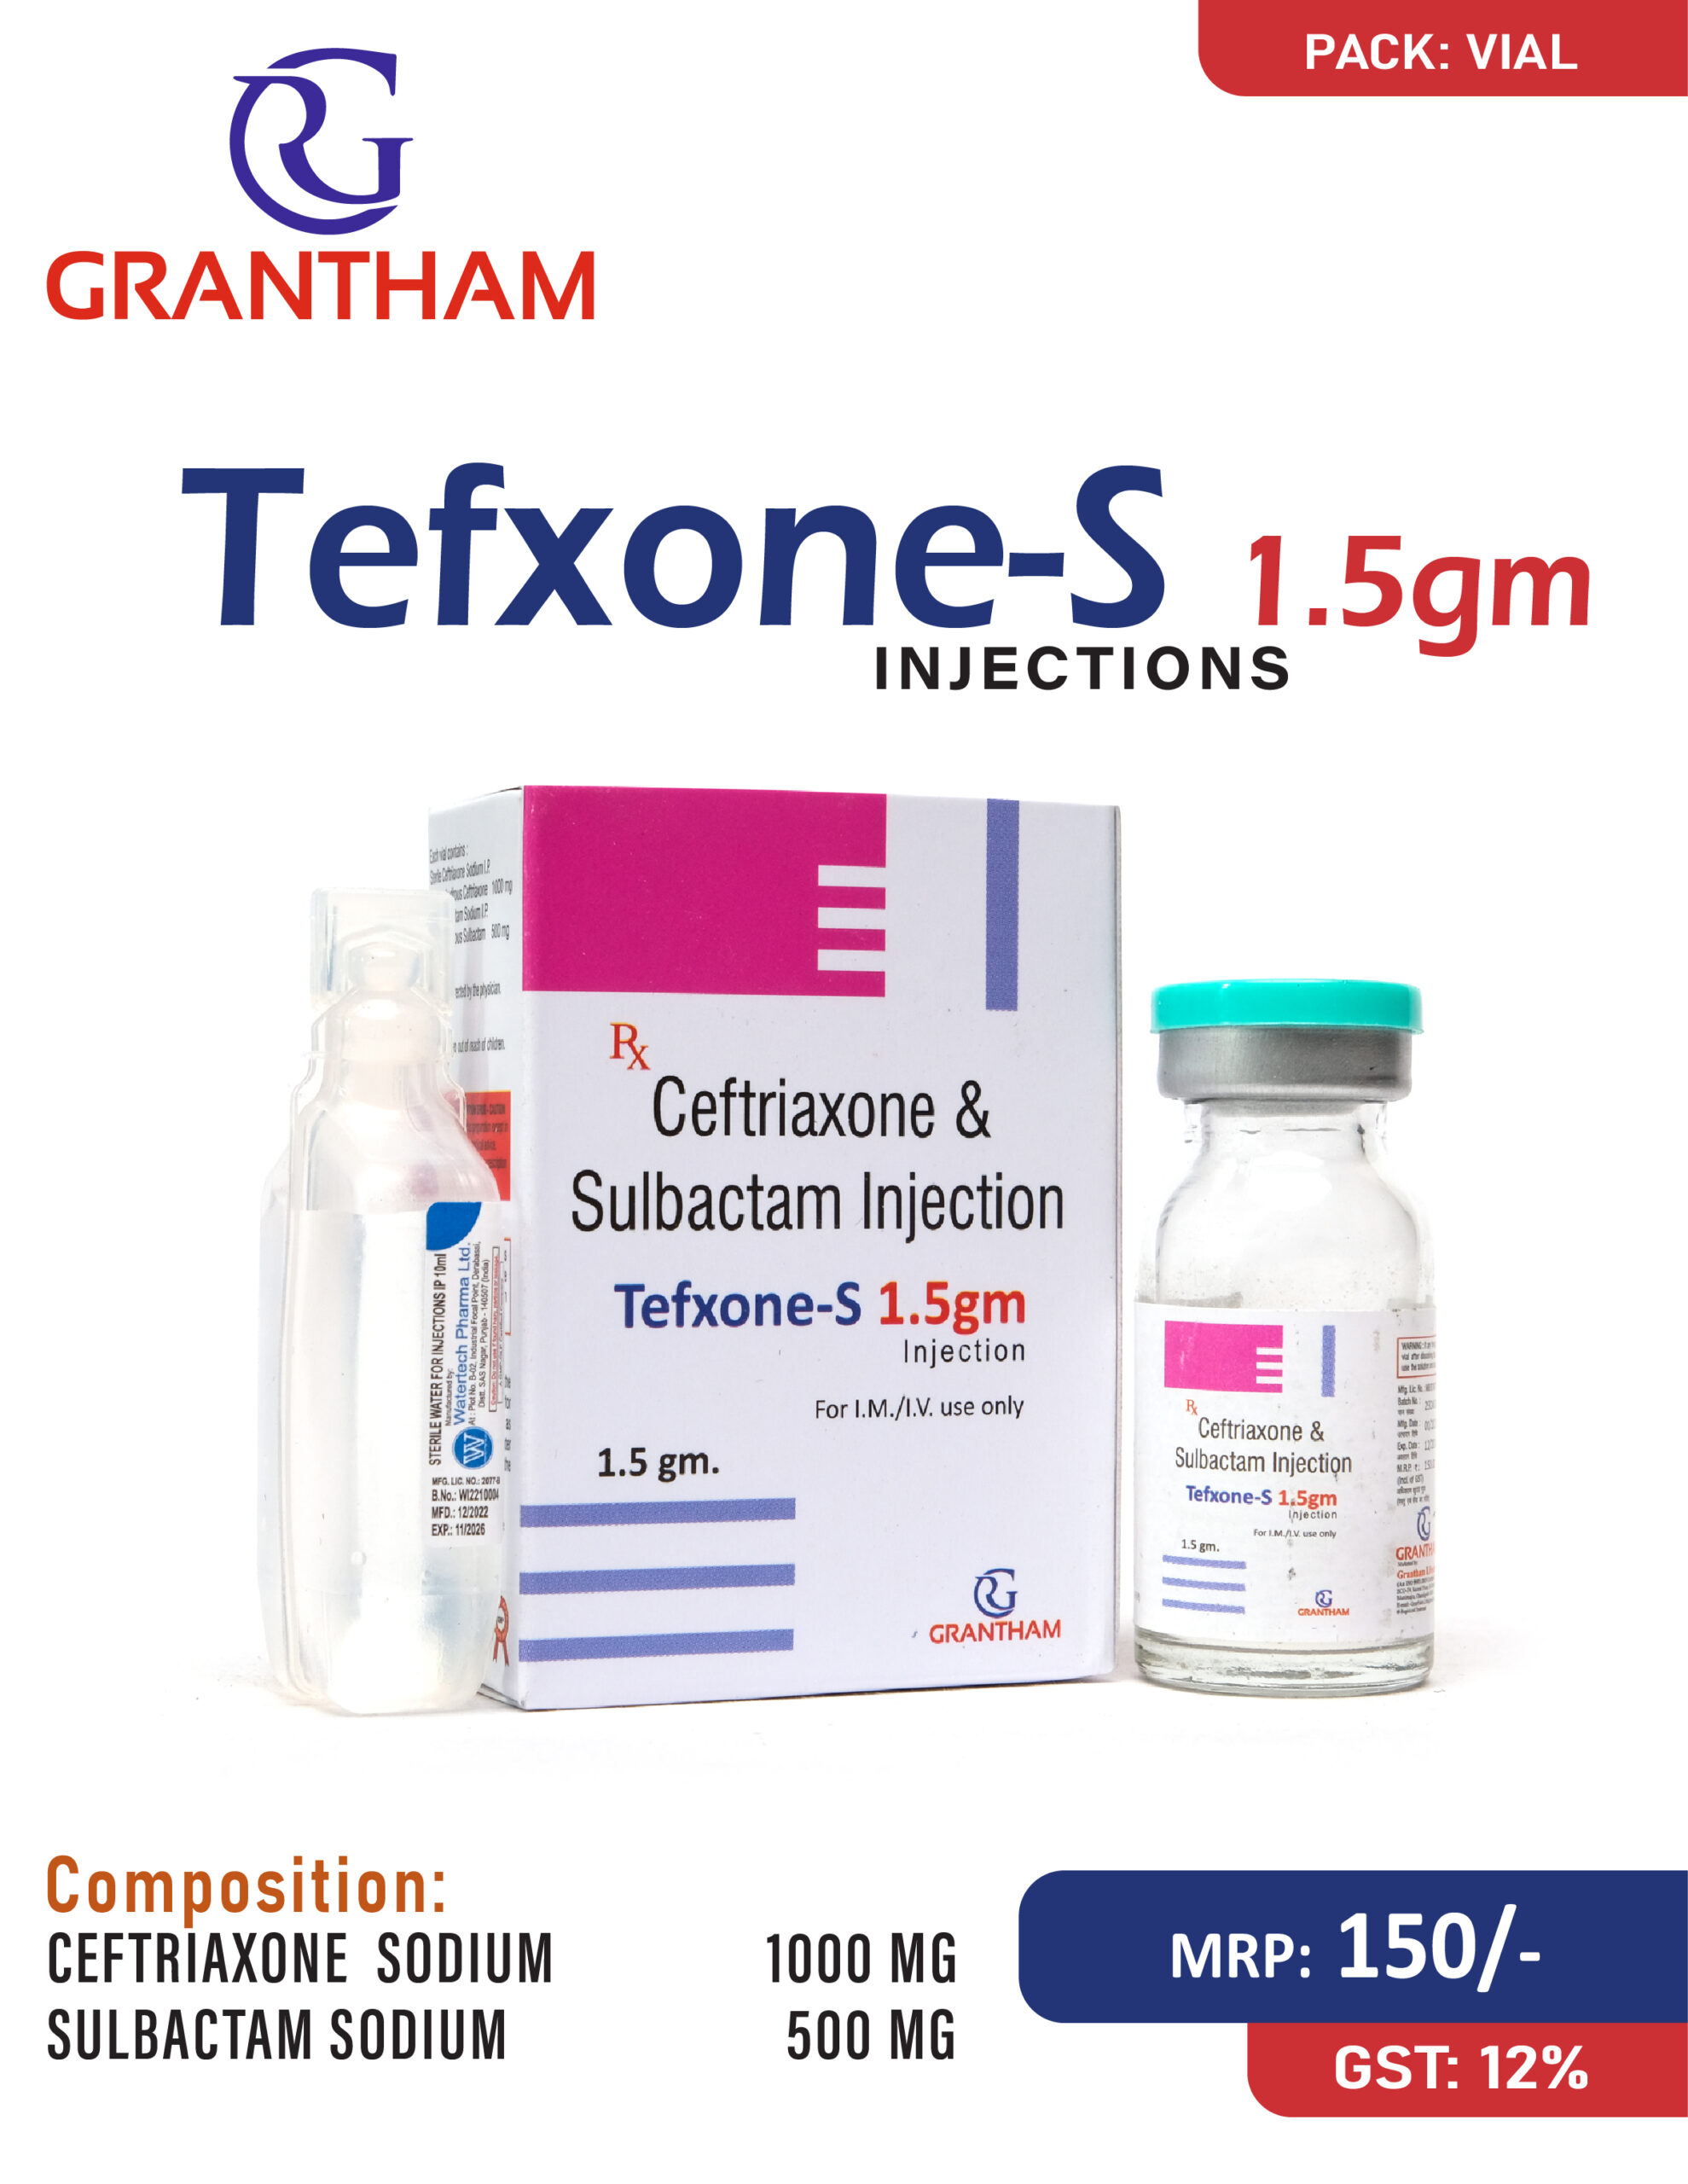 TEFXONE S 1.5GM